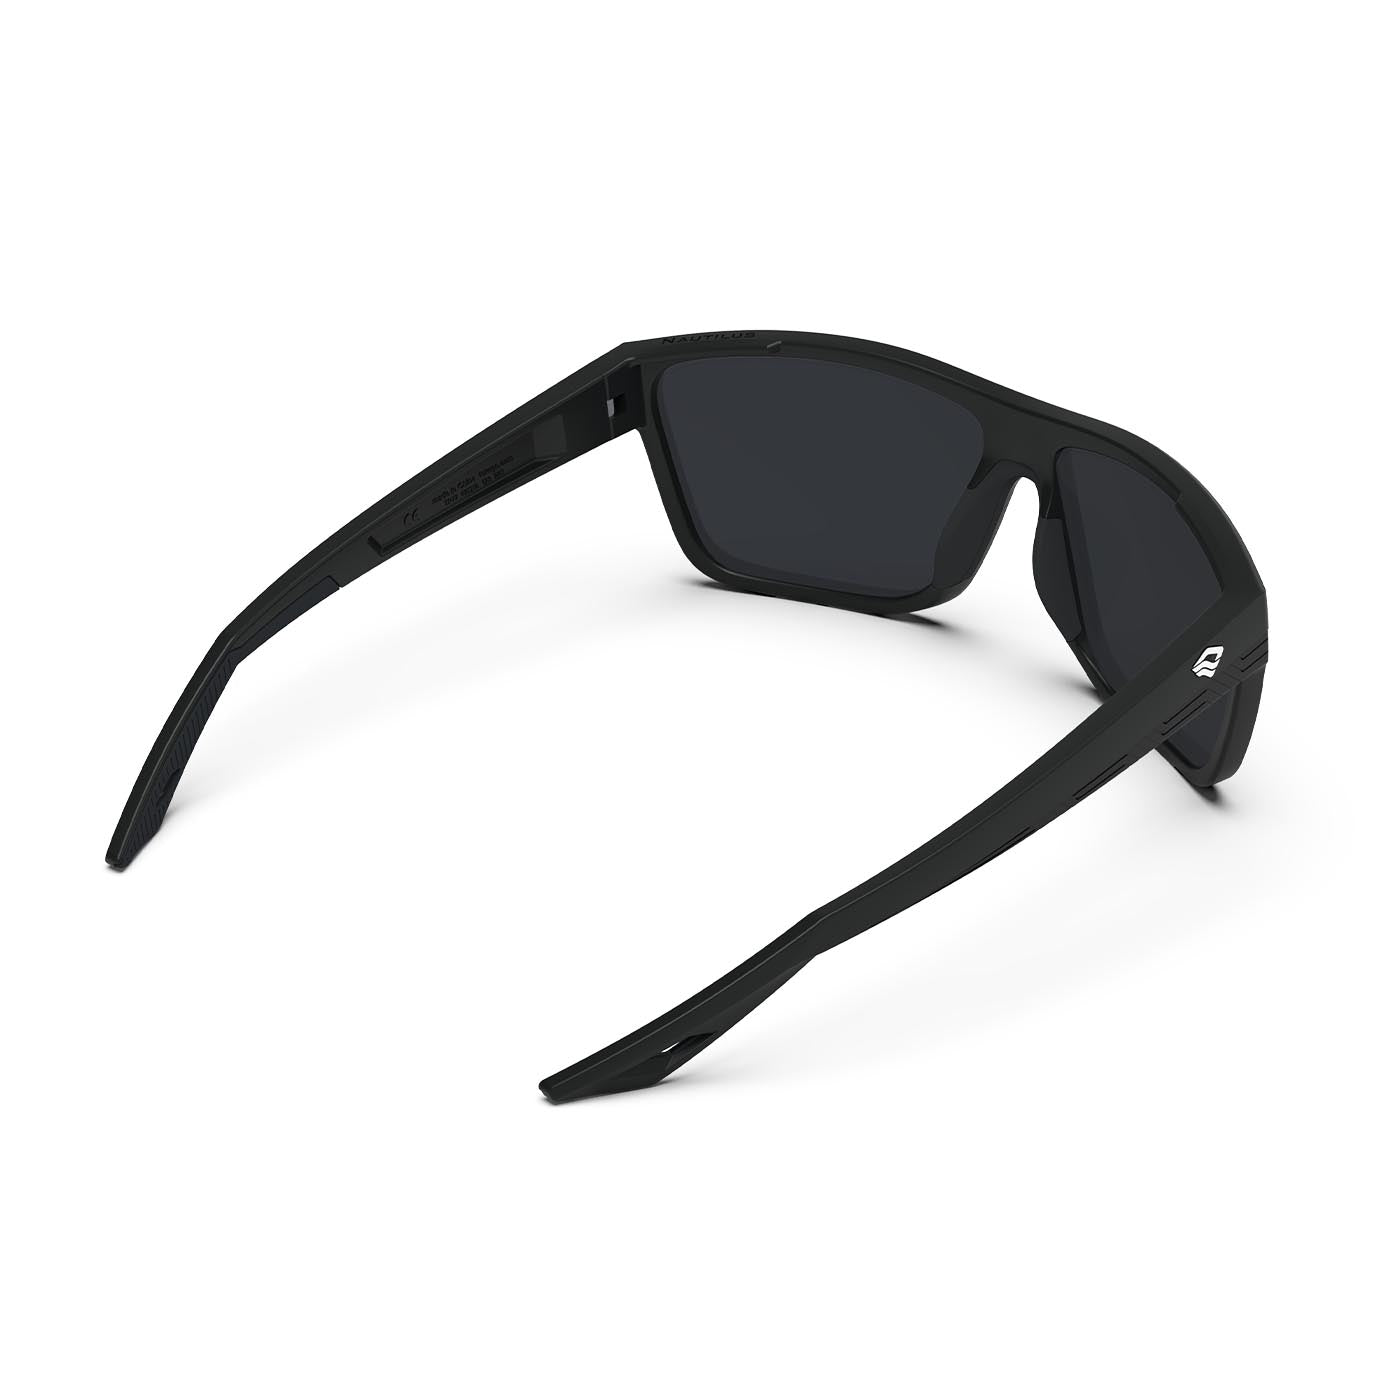 Icebreaker Sports Polarized Sunglasses - Lifetime Warranty - Men & Women  Glasses for Golf, Fishing, and More - Black Frame & Blue Lens